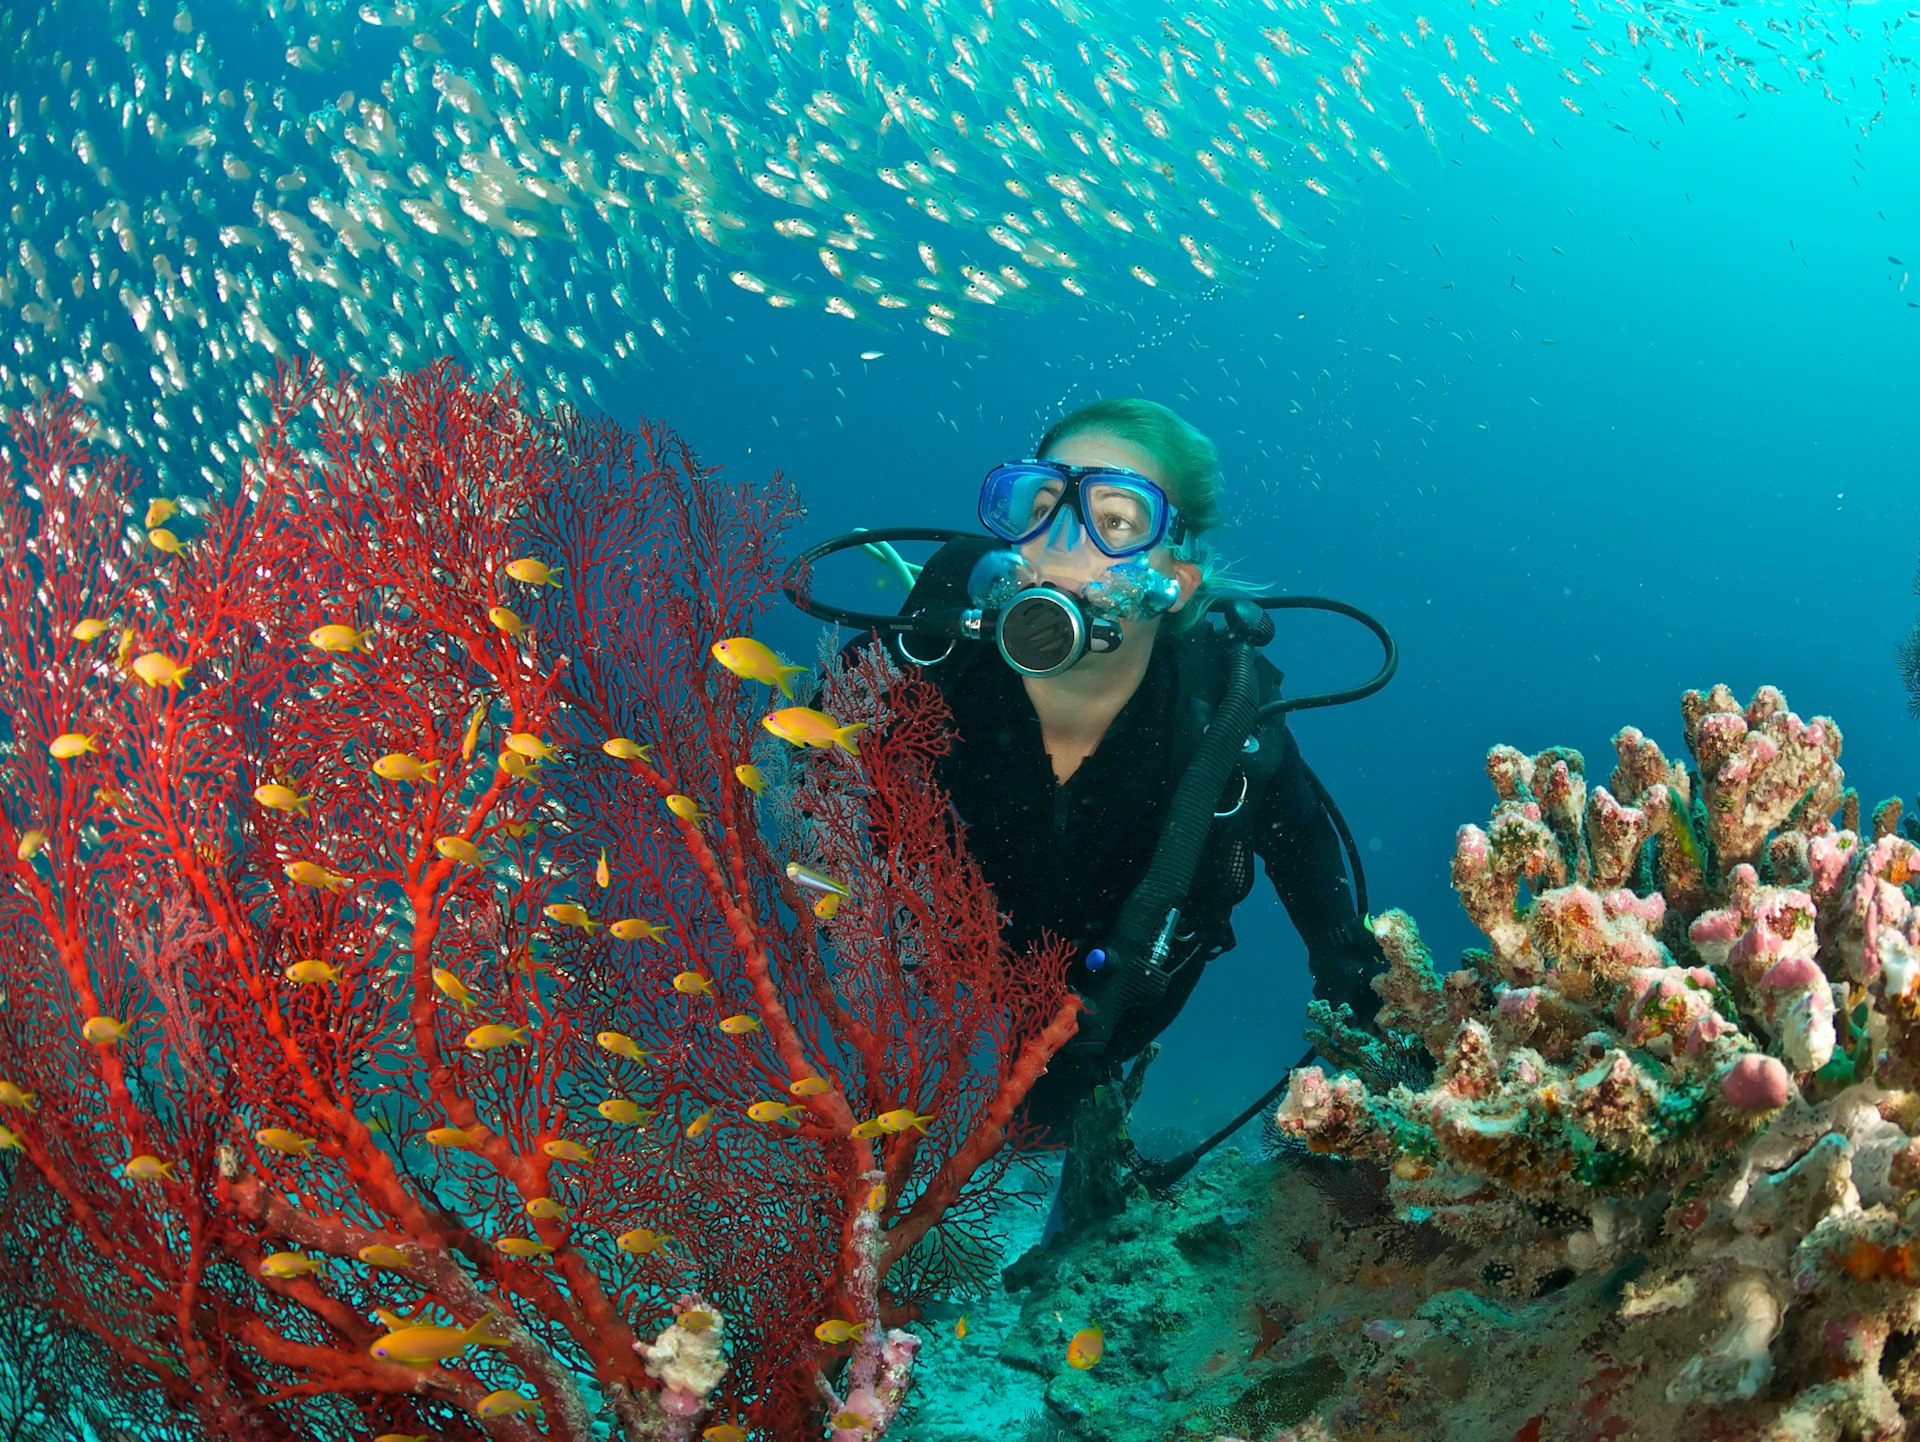 scuba diver admires fish and red fan coral, Maldives